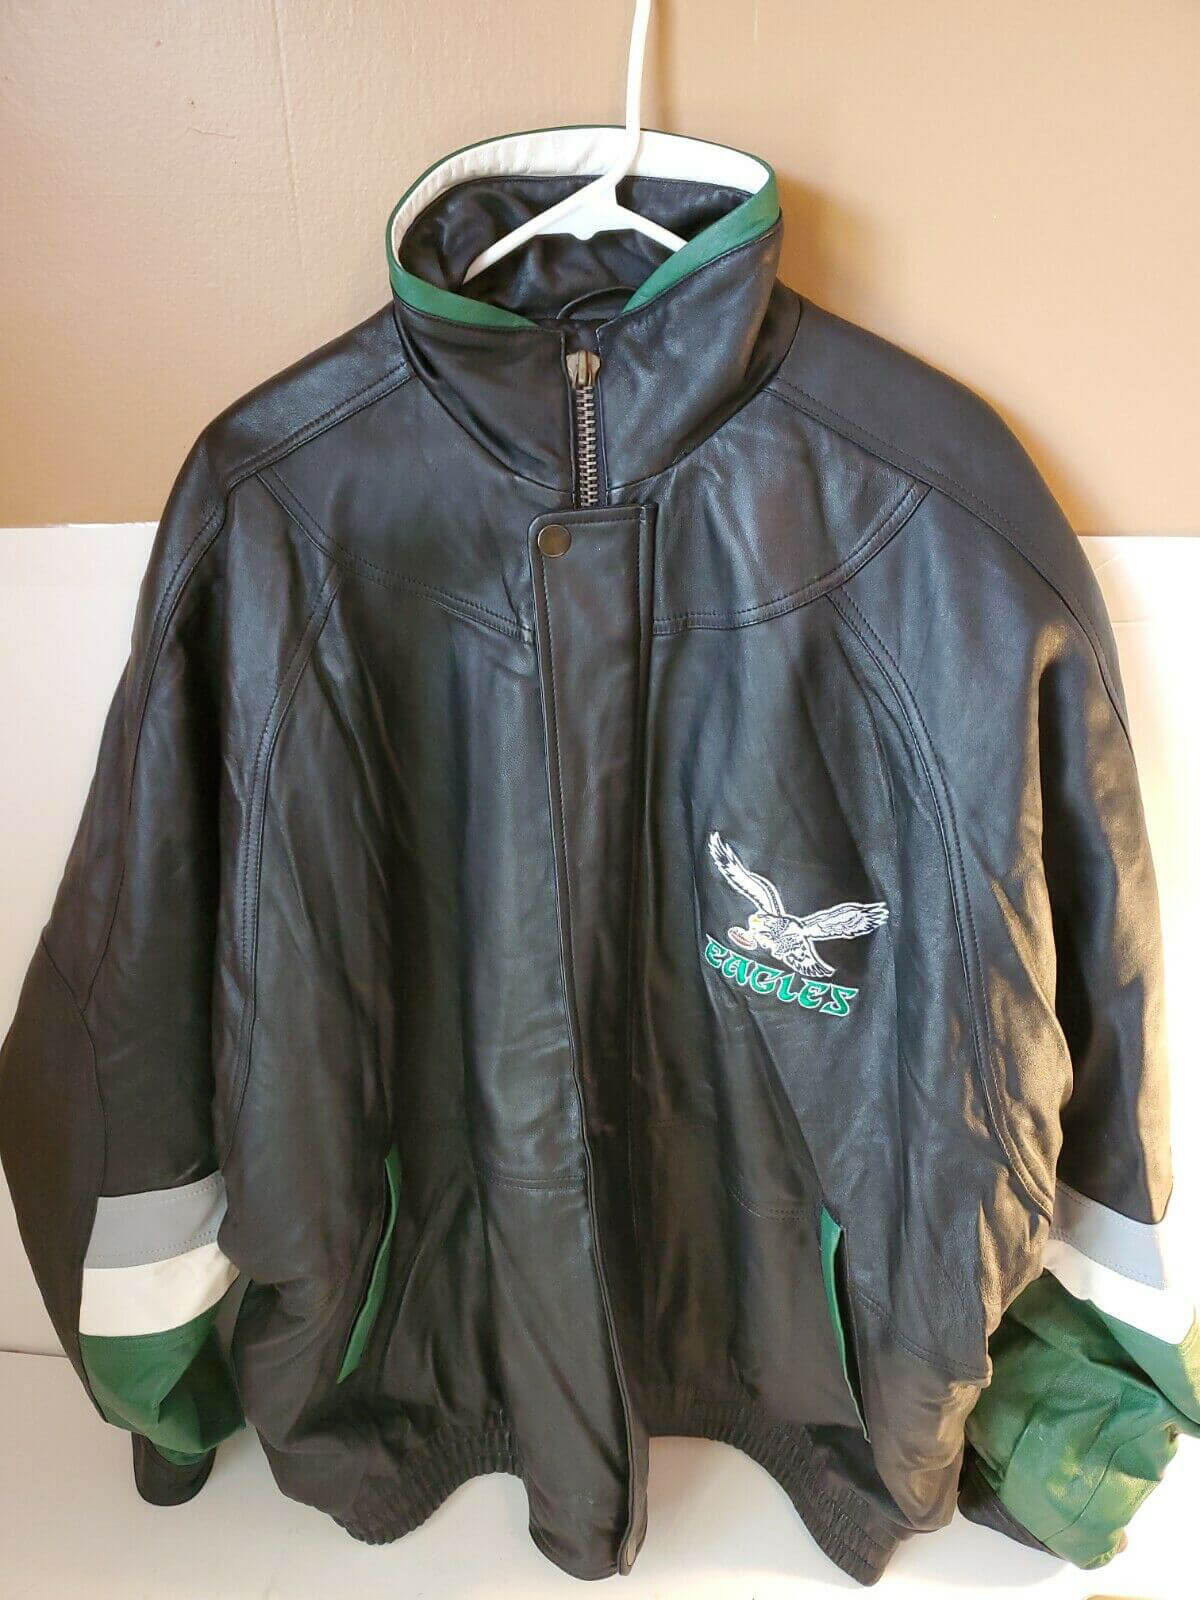 Vintage NFL Philadelphia Eagles Leather Jacket - Maker of Jacket